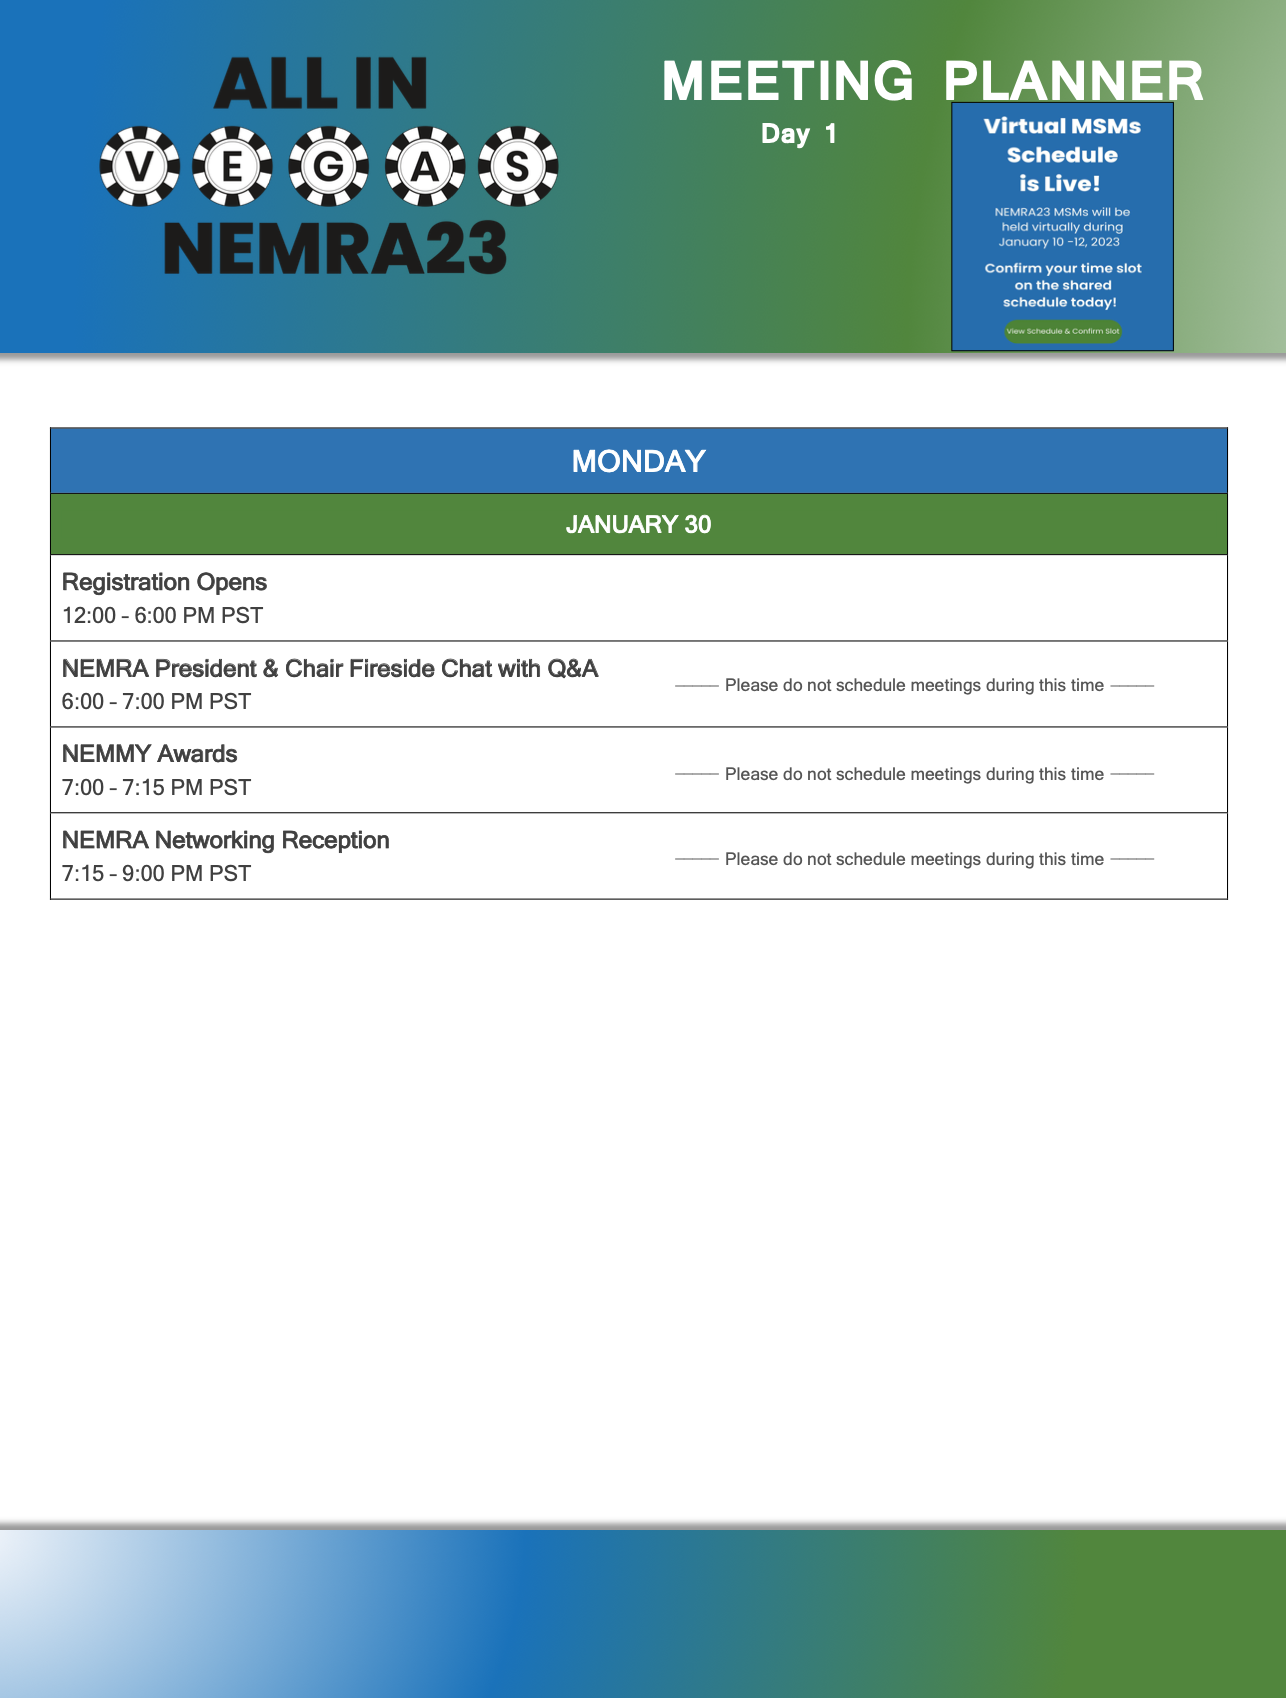 NEMRA23 Meeting Planner